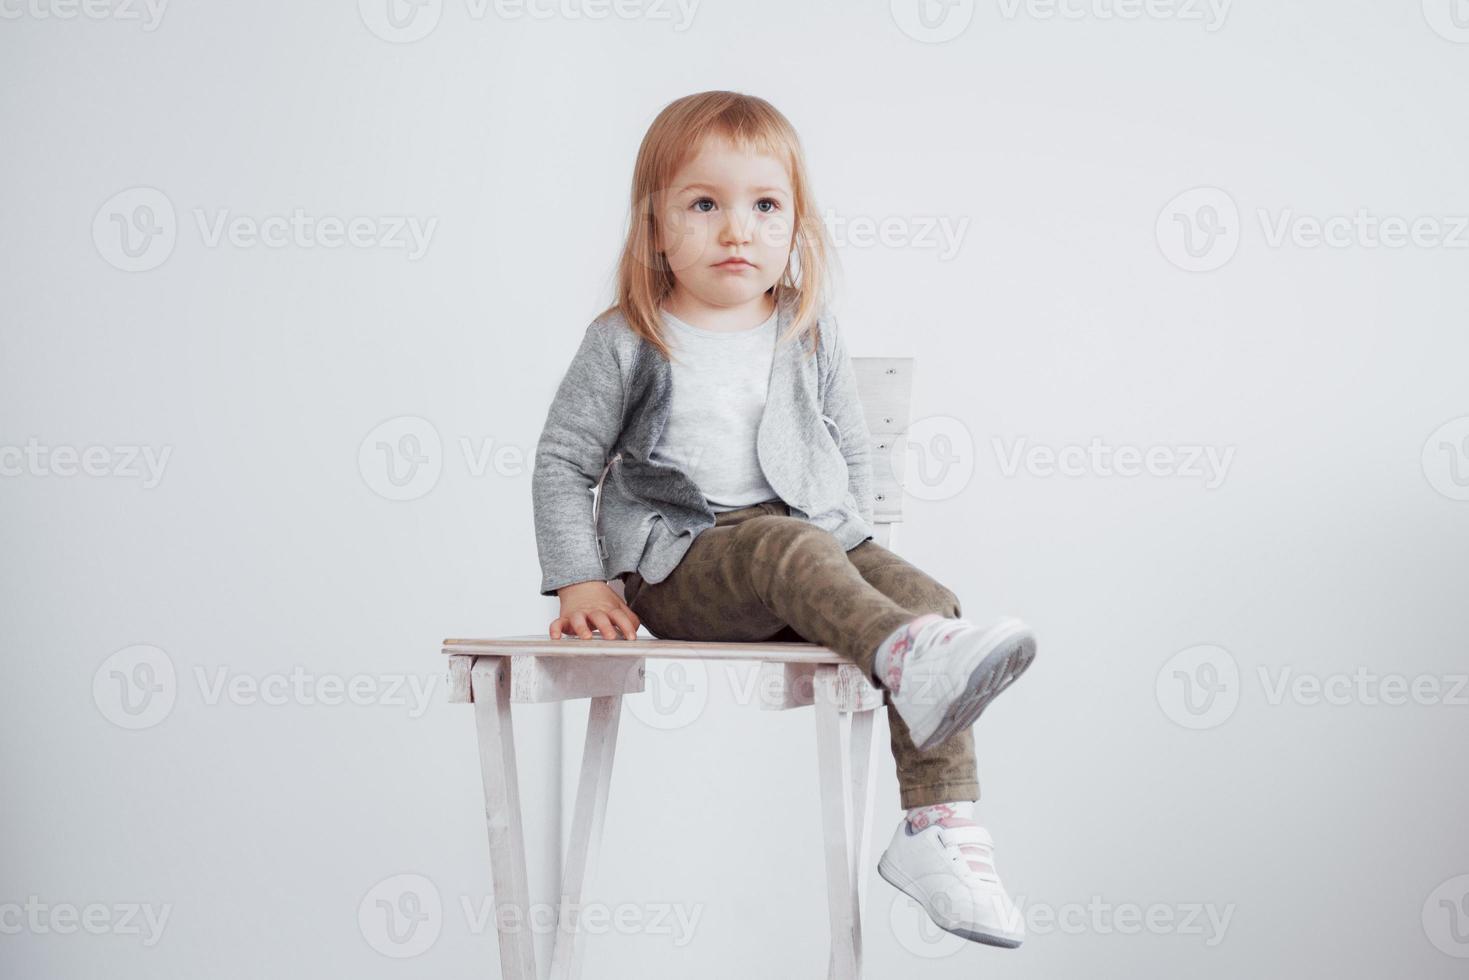 een jong kind, een klein meisje zittend op een hoge kruk lachend foto